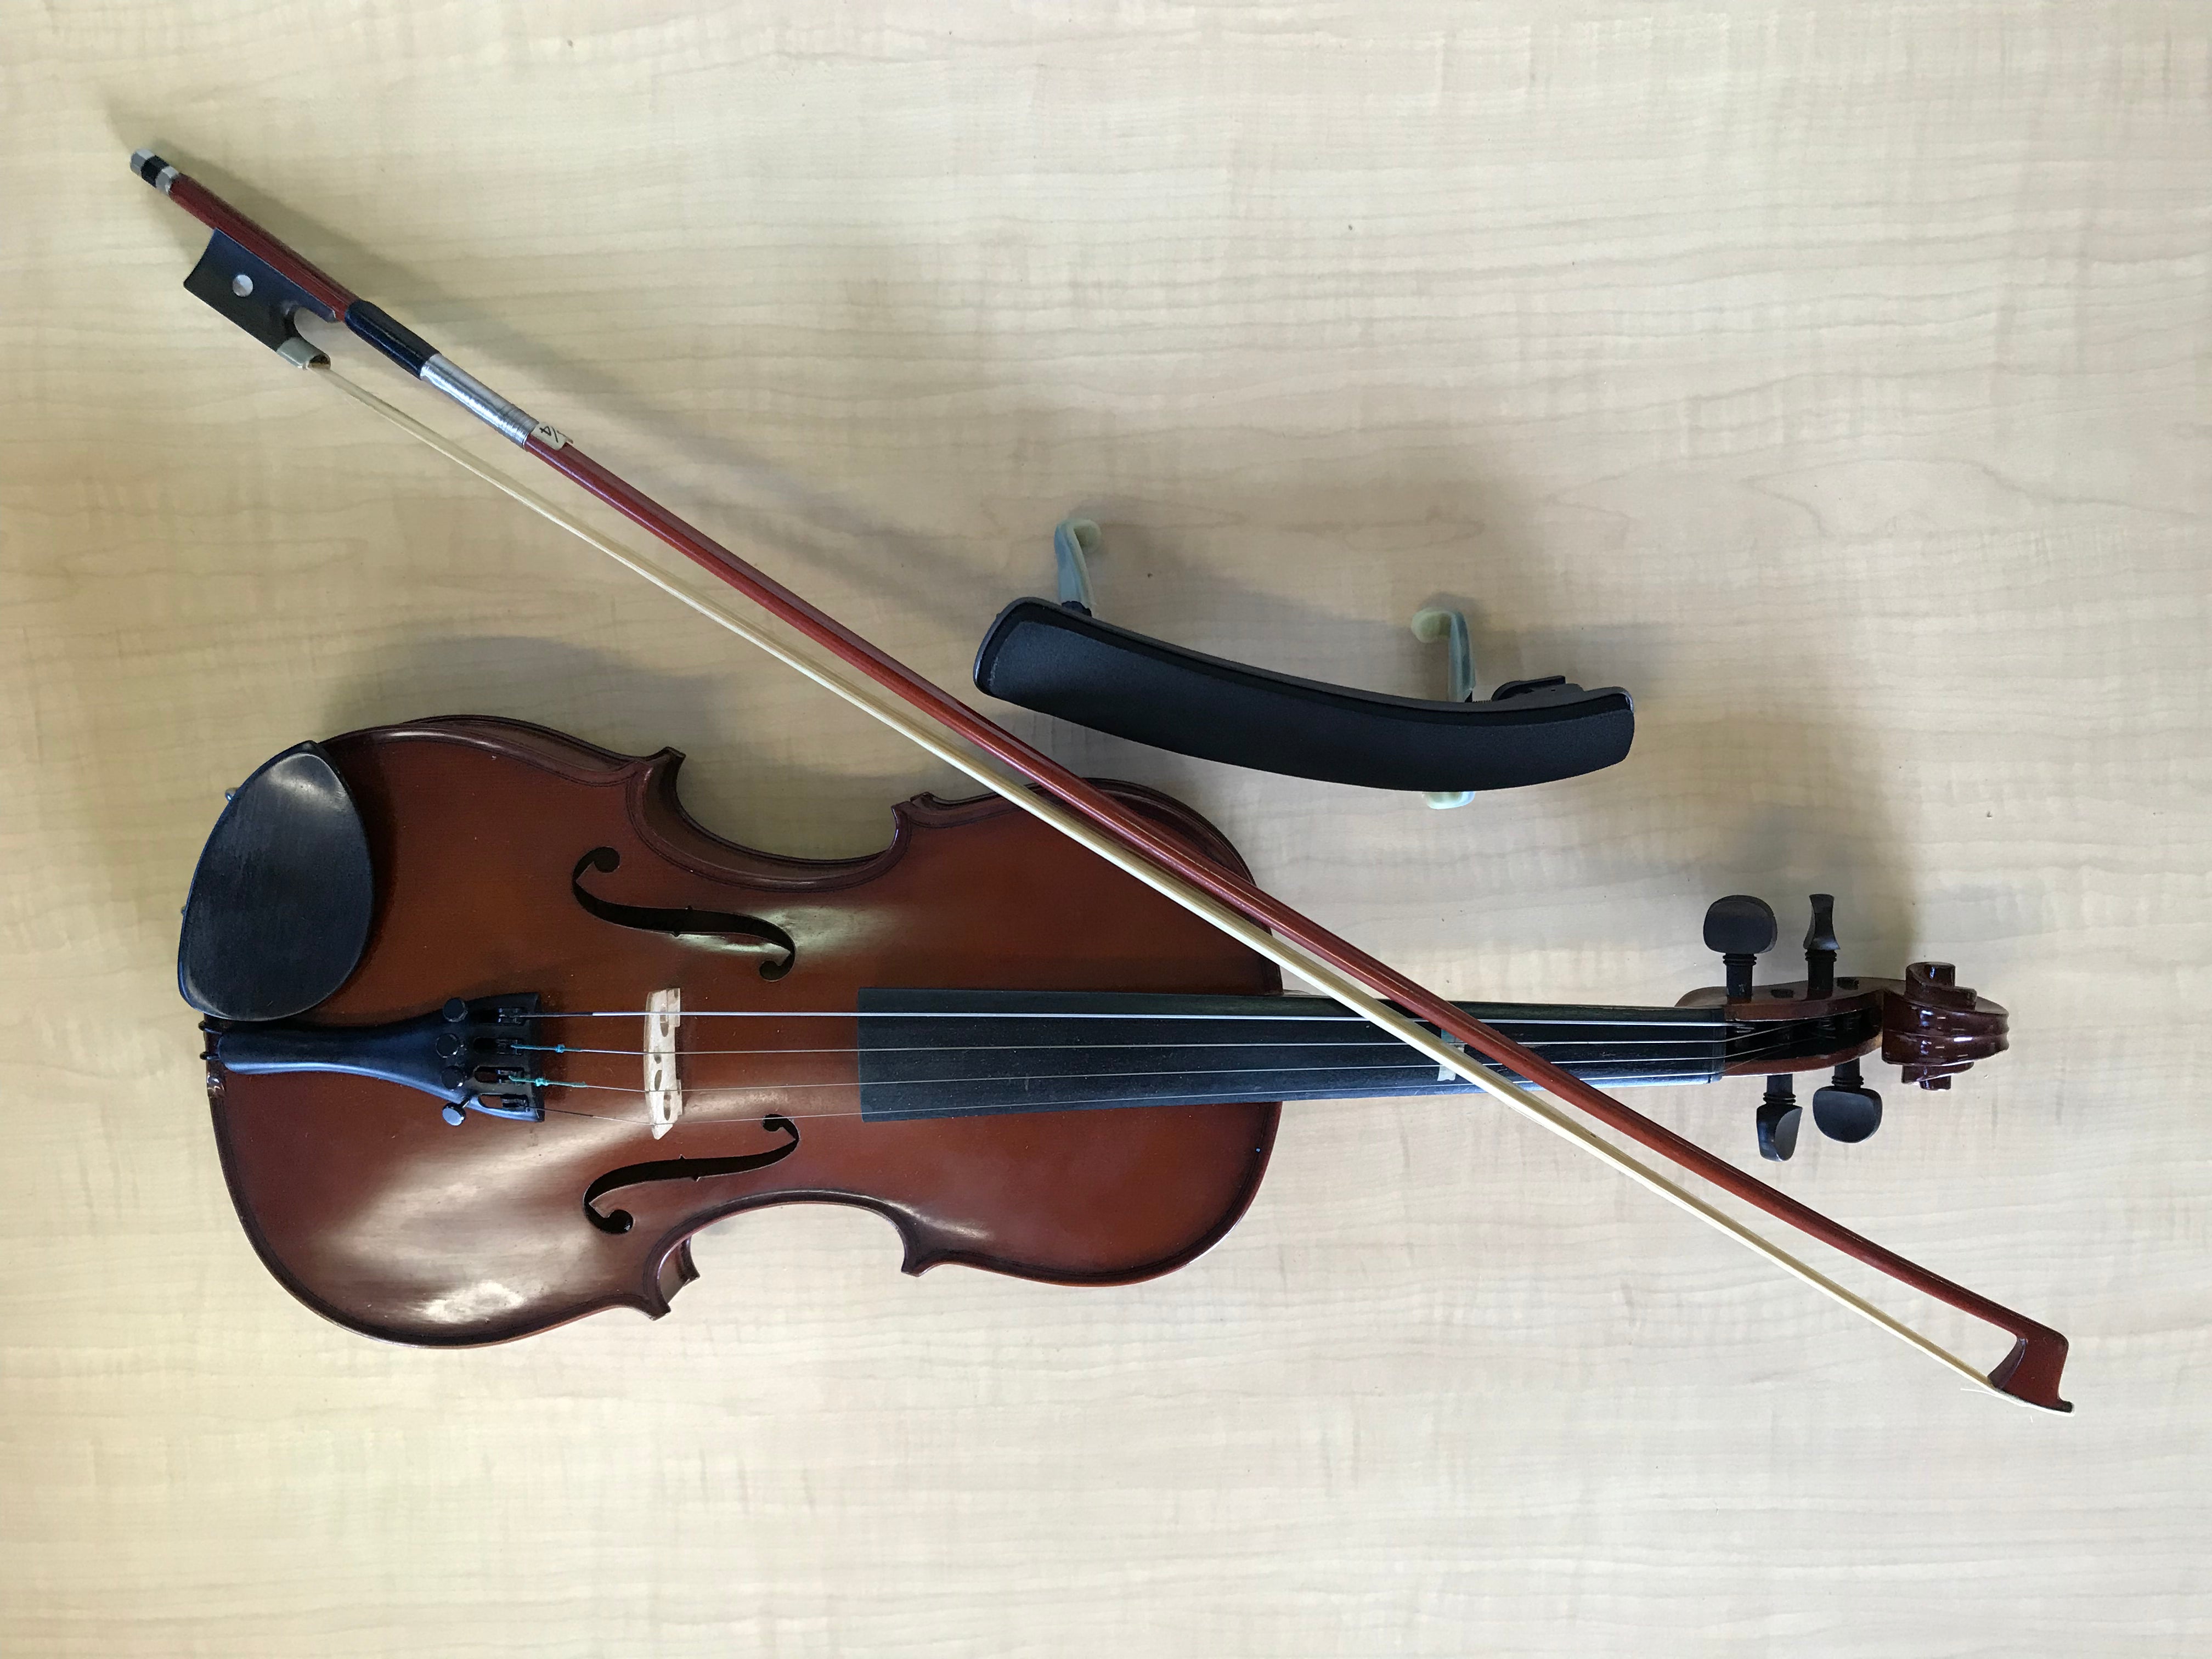 Hofner Alfred Stingl Violin and Case AS-040-9-V3/4